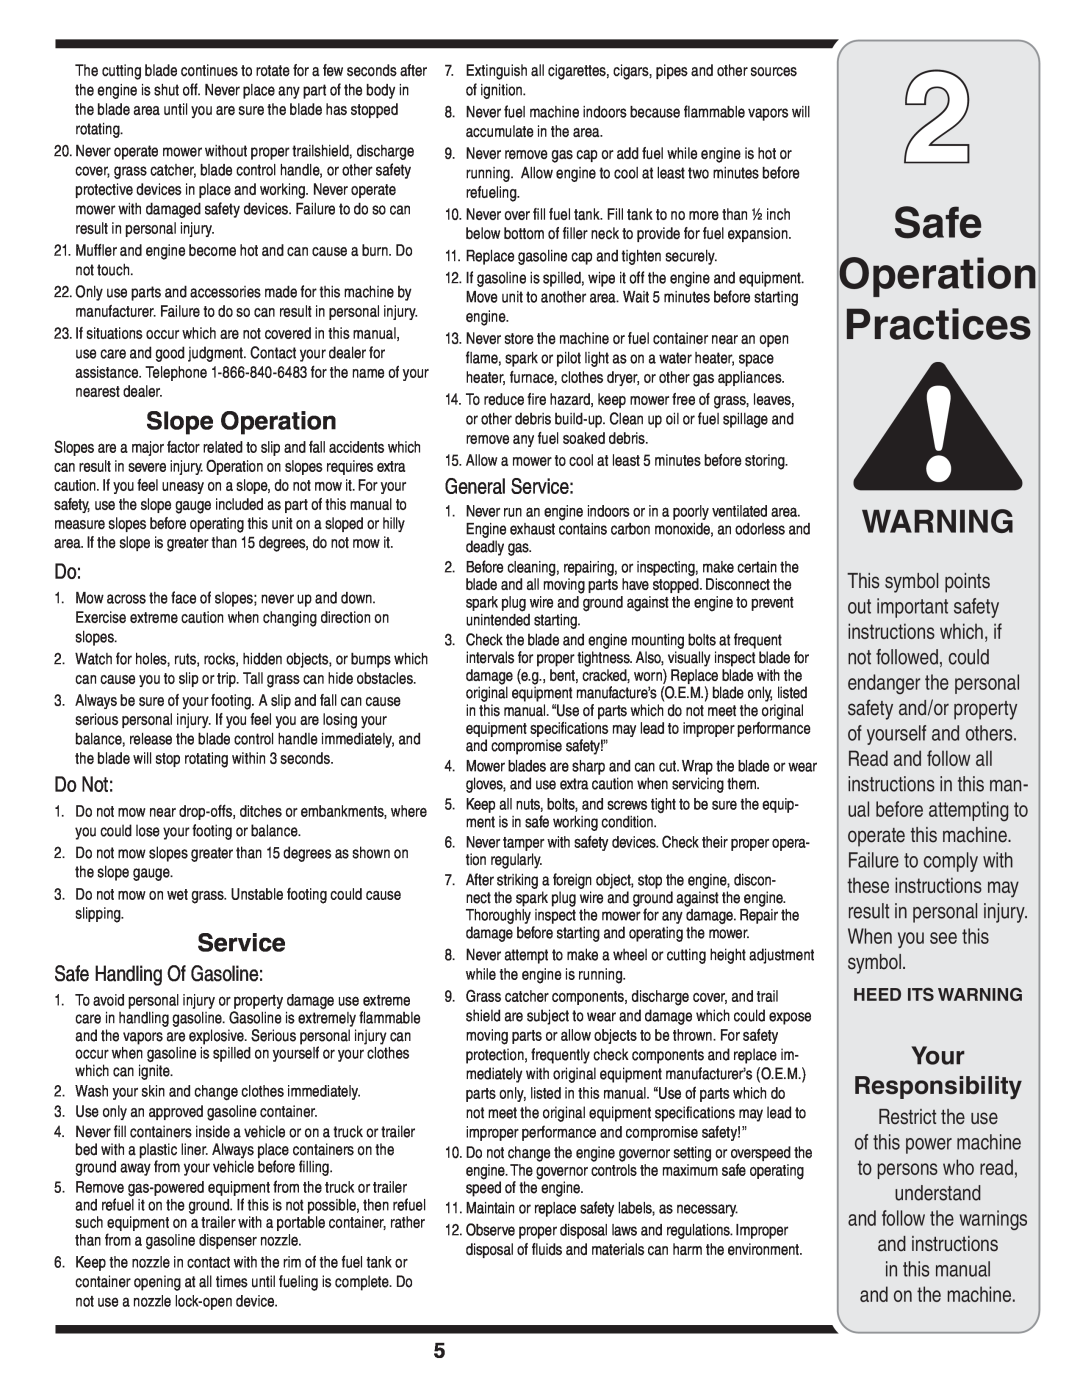 MTD 838 warranty Safe Operation Practices, Slope Operation, Do Not, Safe Handling Of Gasoline, General Service 